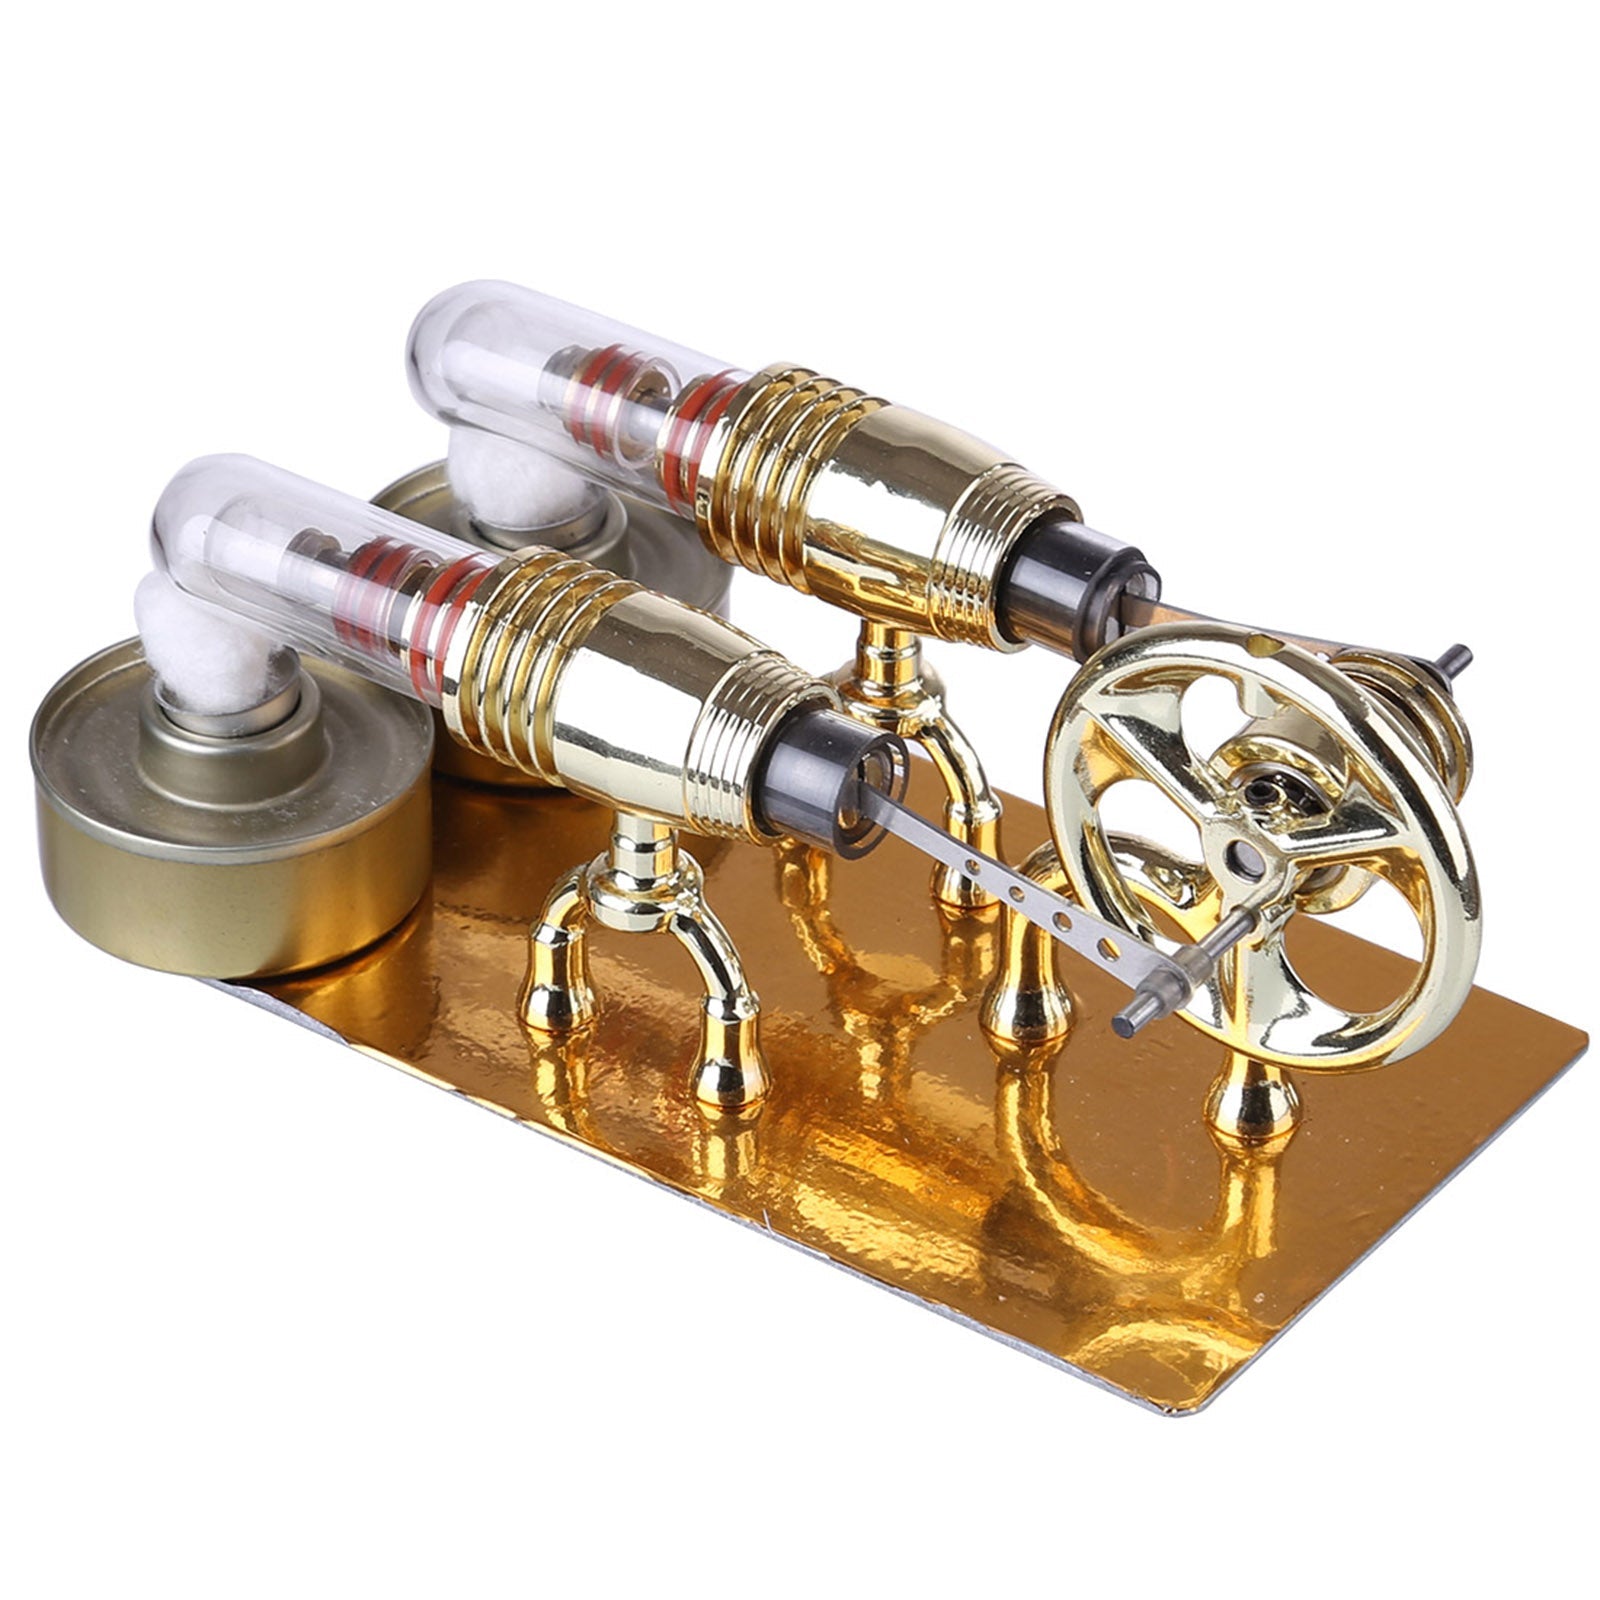 ENJOMOR Two-cylinder Stirling Engine Model Engine Teaching Show Model Science Educational Toys - Golden